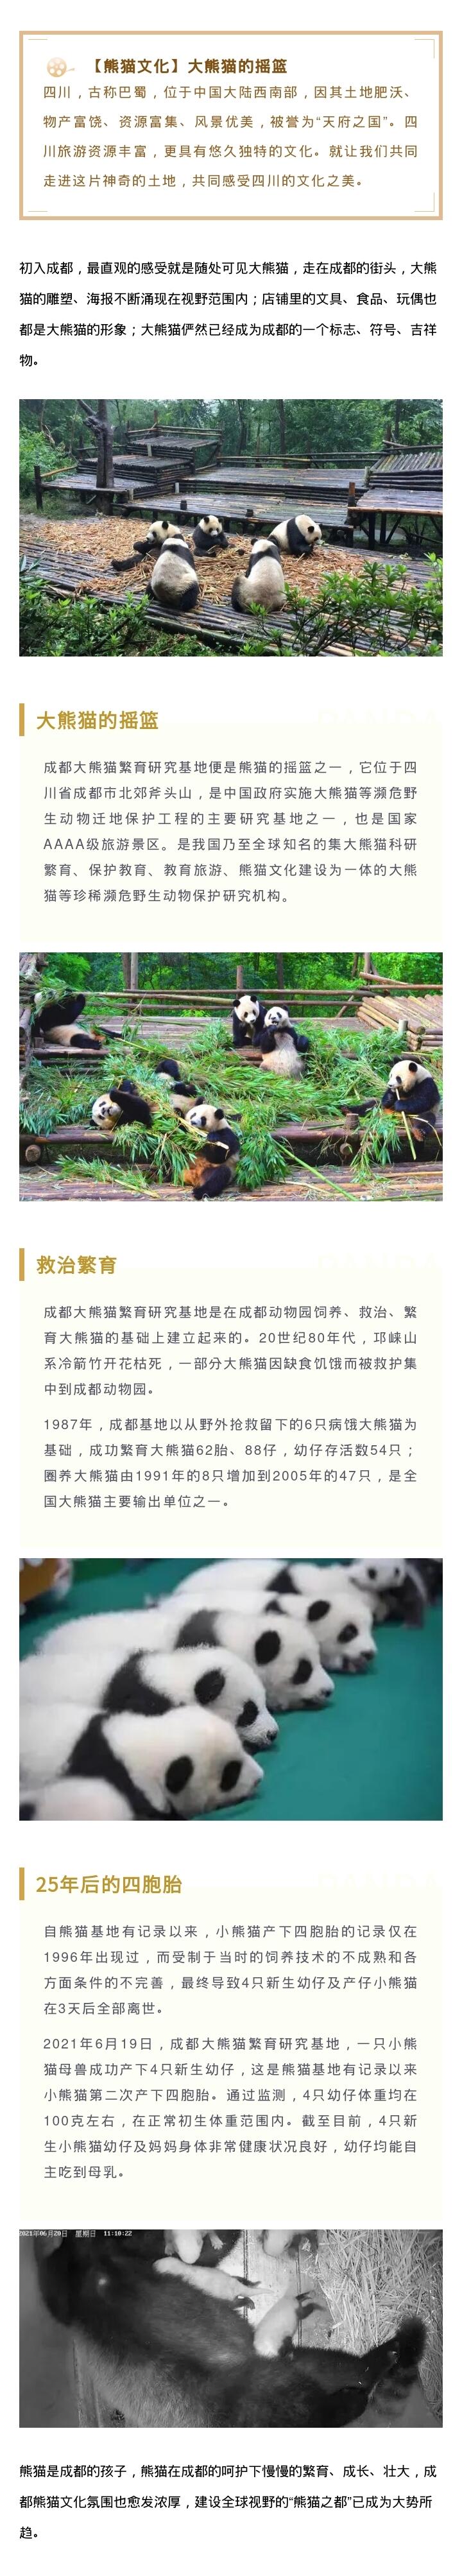 「周末话巴蜀」大熊猫的摇篮—成都大熊猫繁殖研究基地